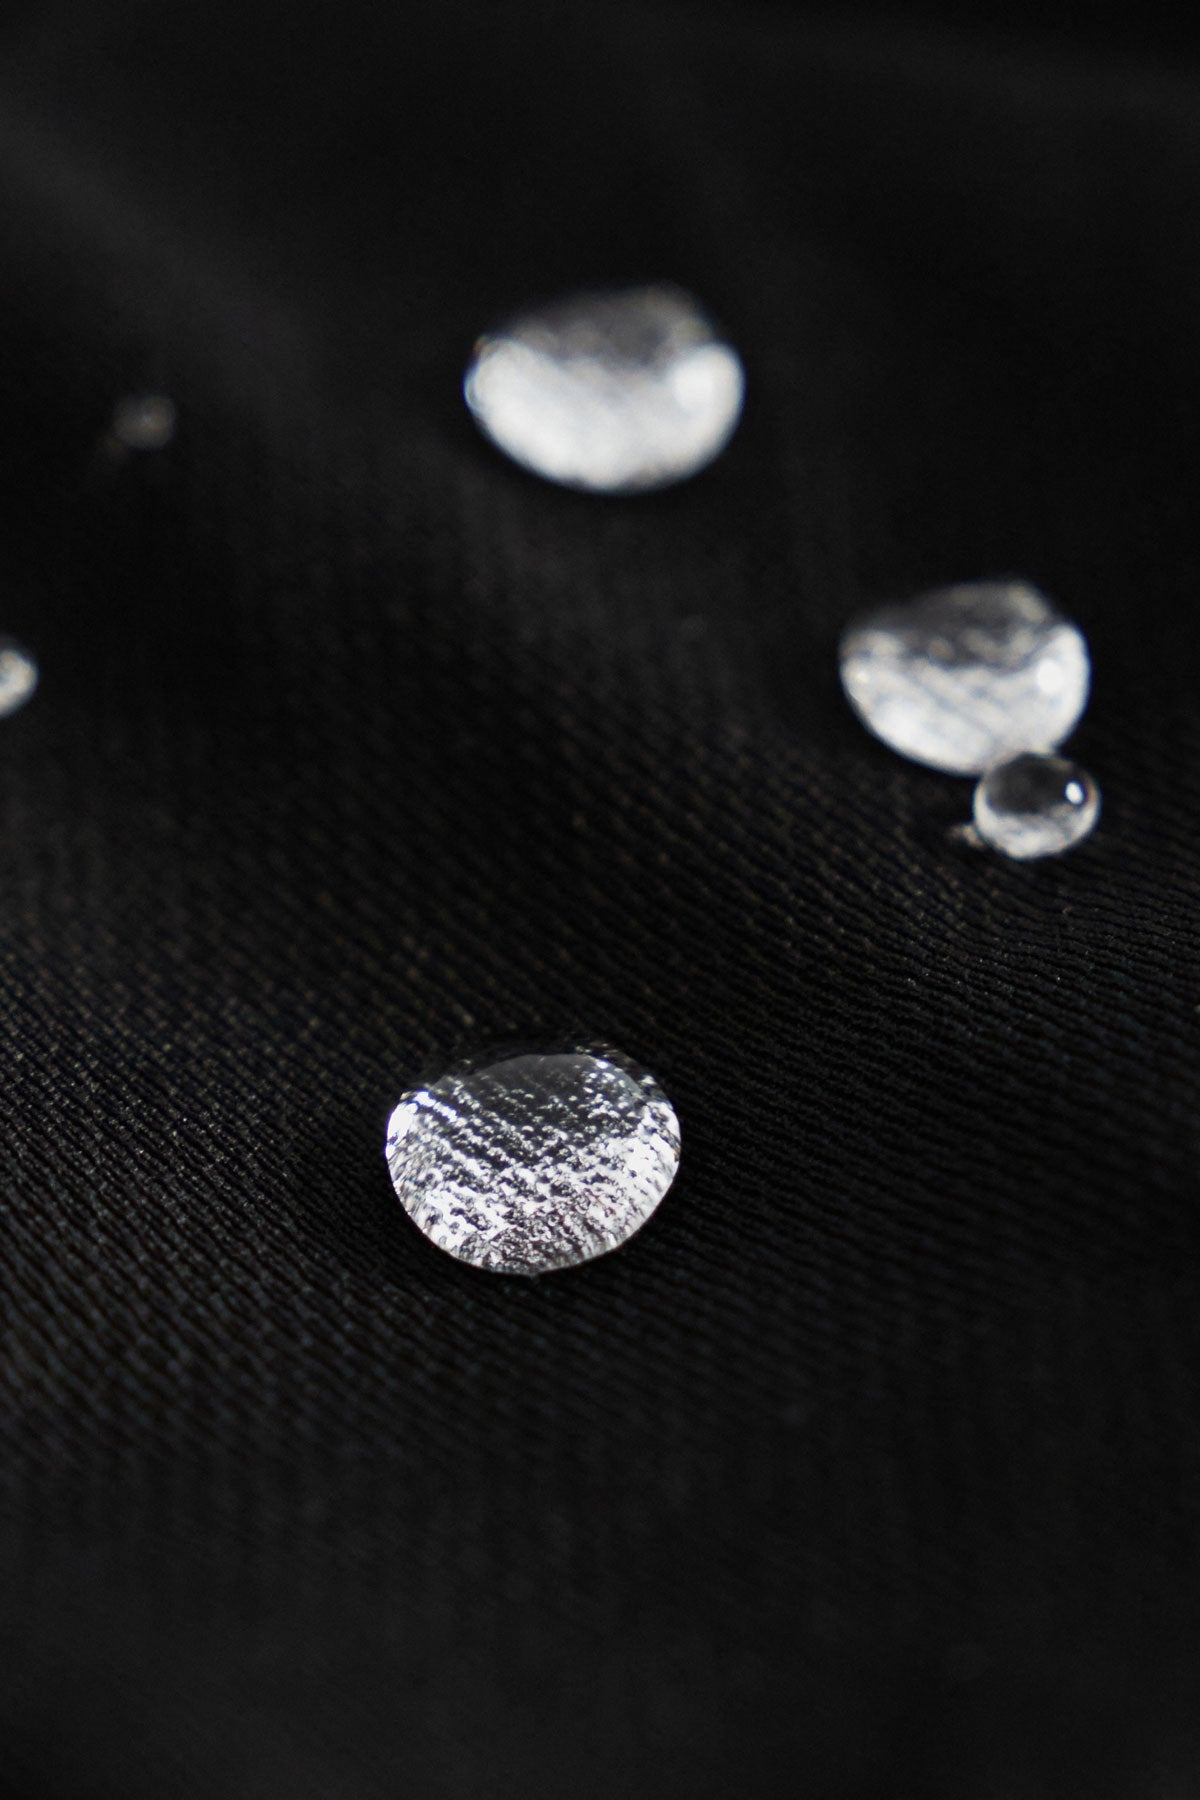 Camiseta básica para mujer en negro de Sepiia, fresca y resistente a manchas y arrugas. Foto gotas